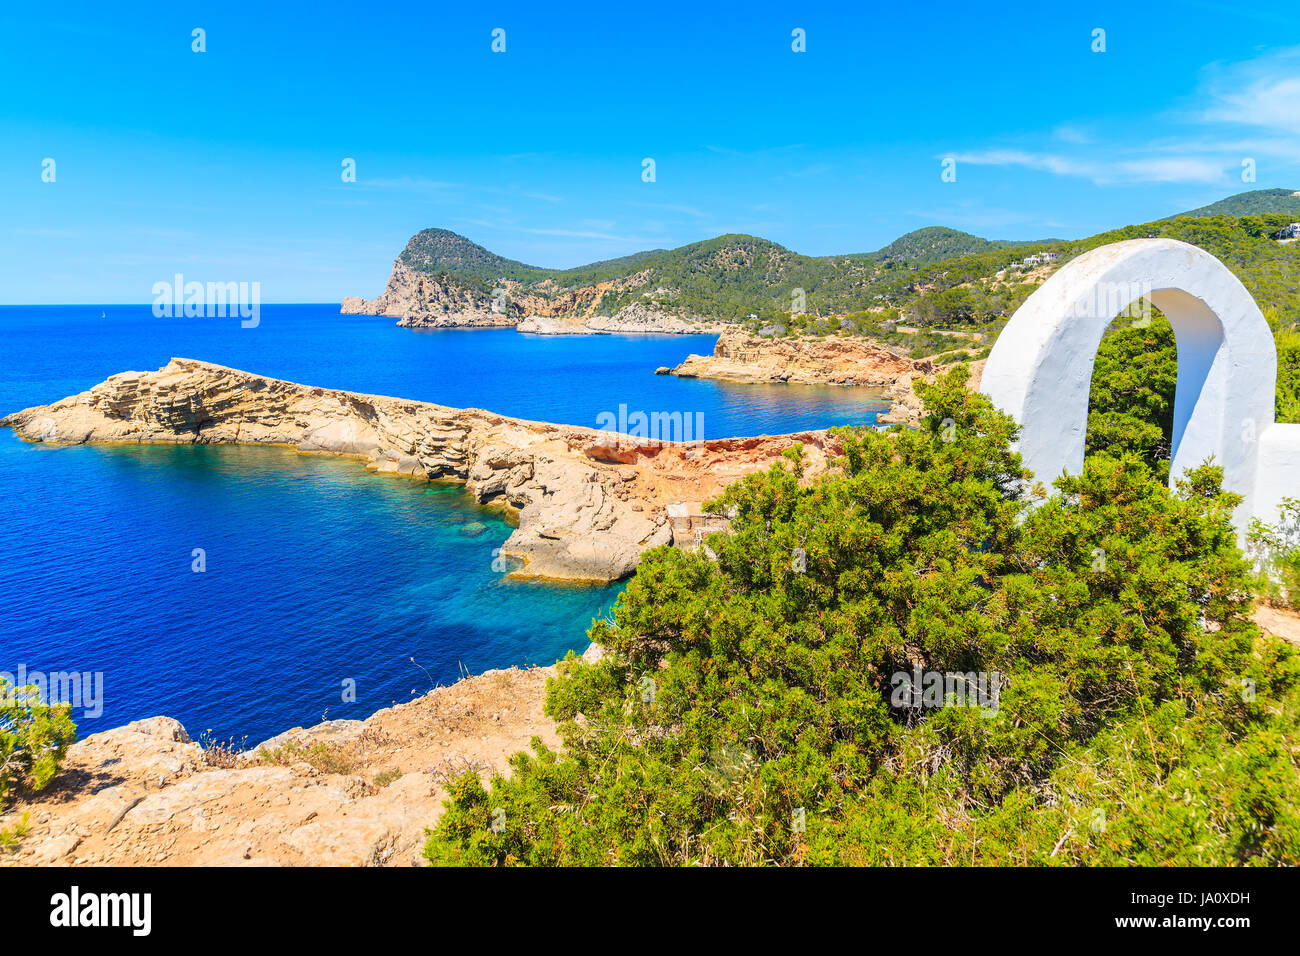 Arche blanche gate sur chemin côtier à Punta Galera baie entourée de formations de pierre incroyable, l'île d'Ibiza, Espagne Banque D'Images